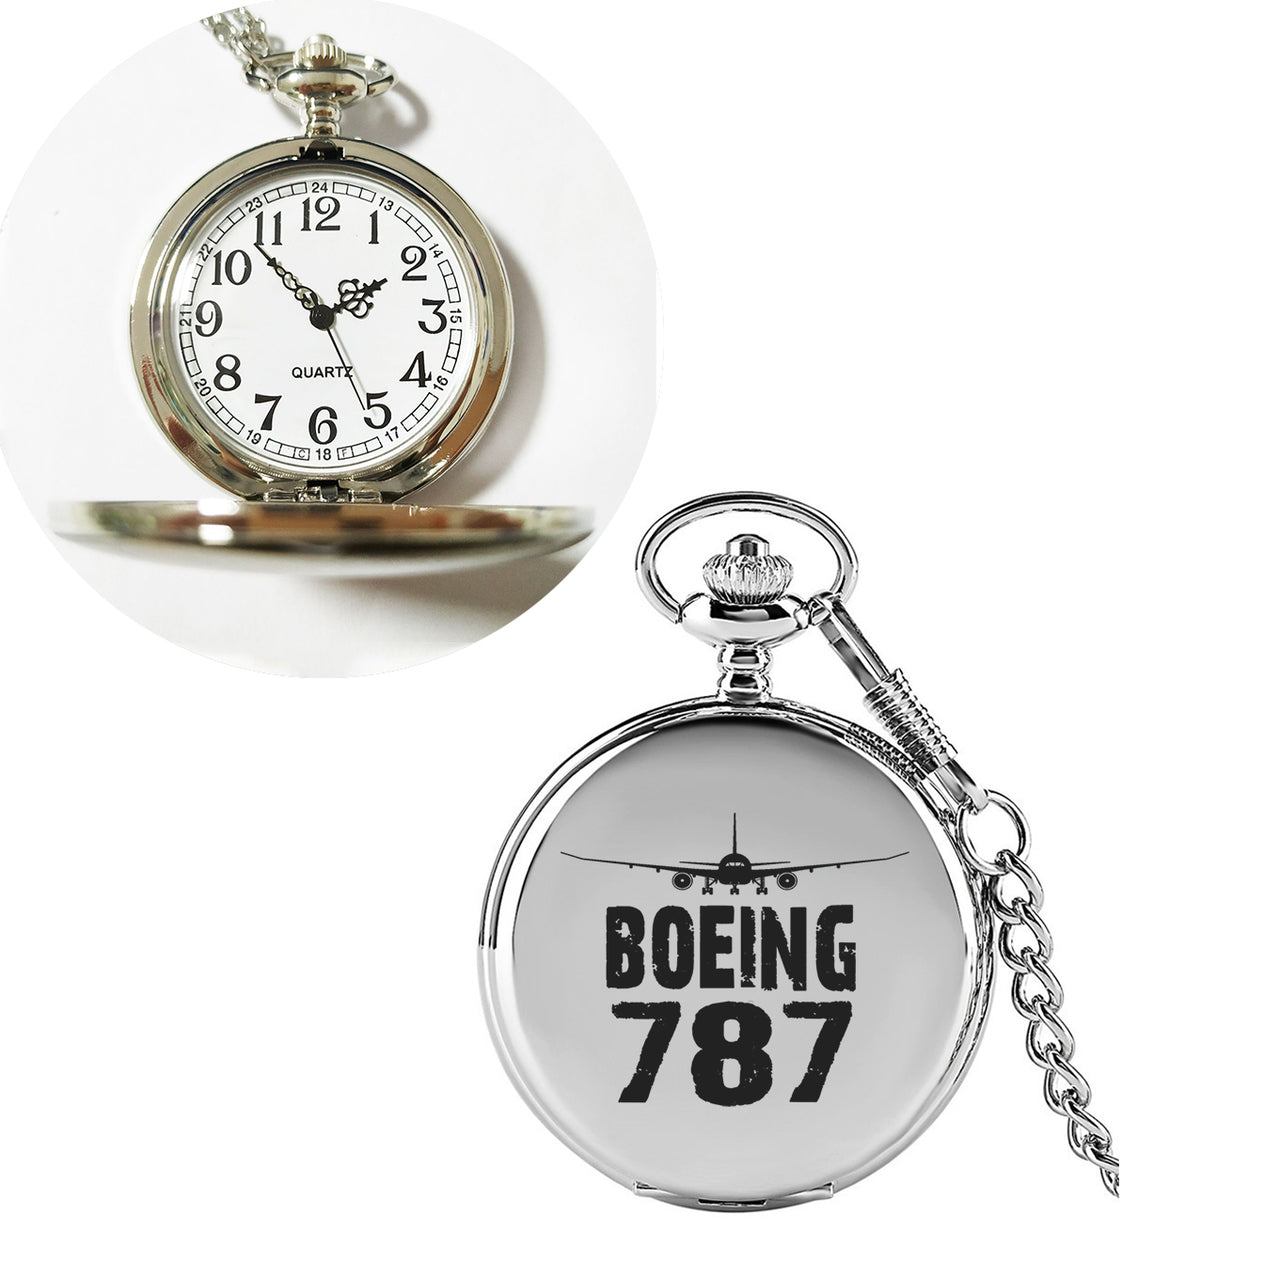 Boeing 787 & Plane Designed Pocket Watches